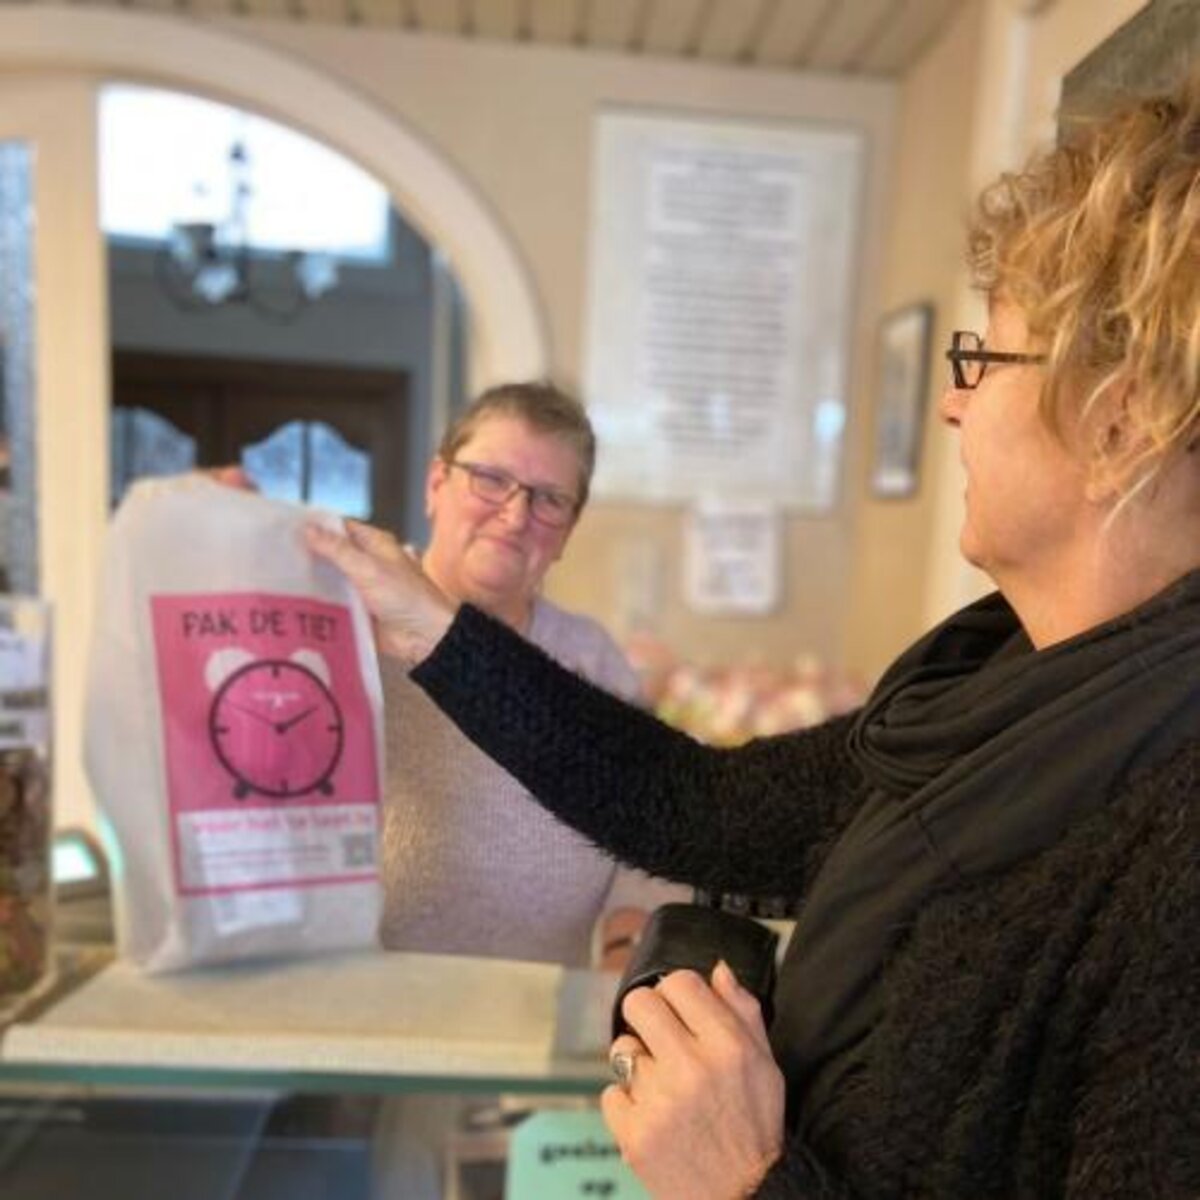 Roze 'pak de tiet'-broodzakken veroveren Middelkerkse huishoudens. - foto gemeente Middelkerke